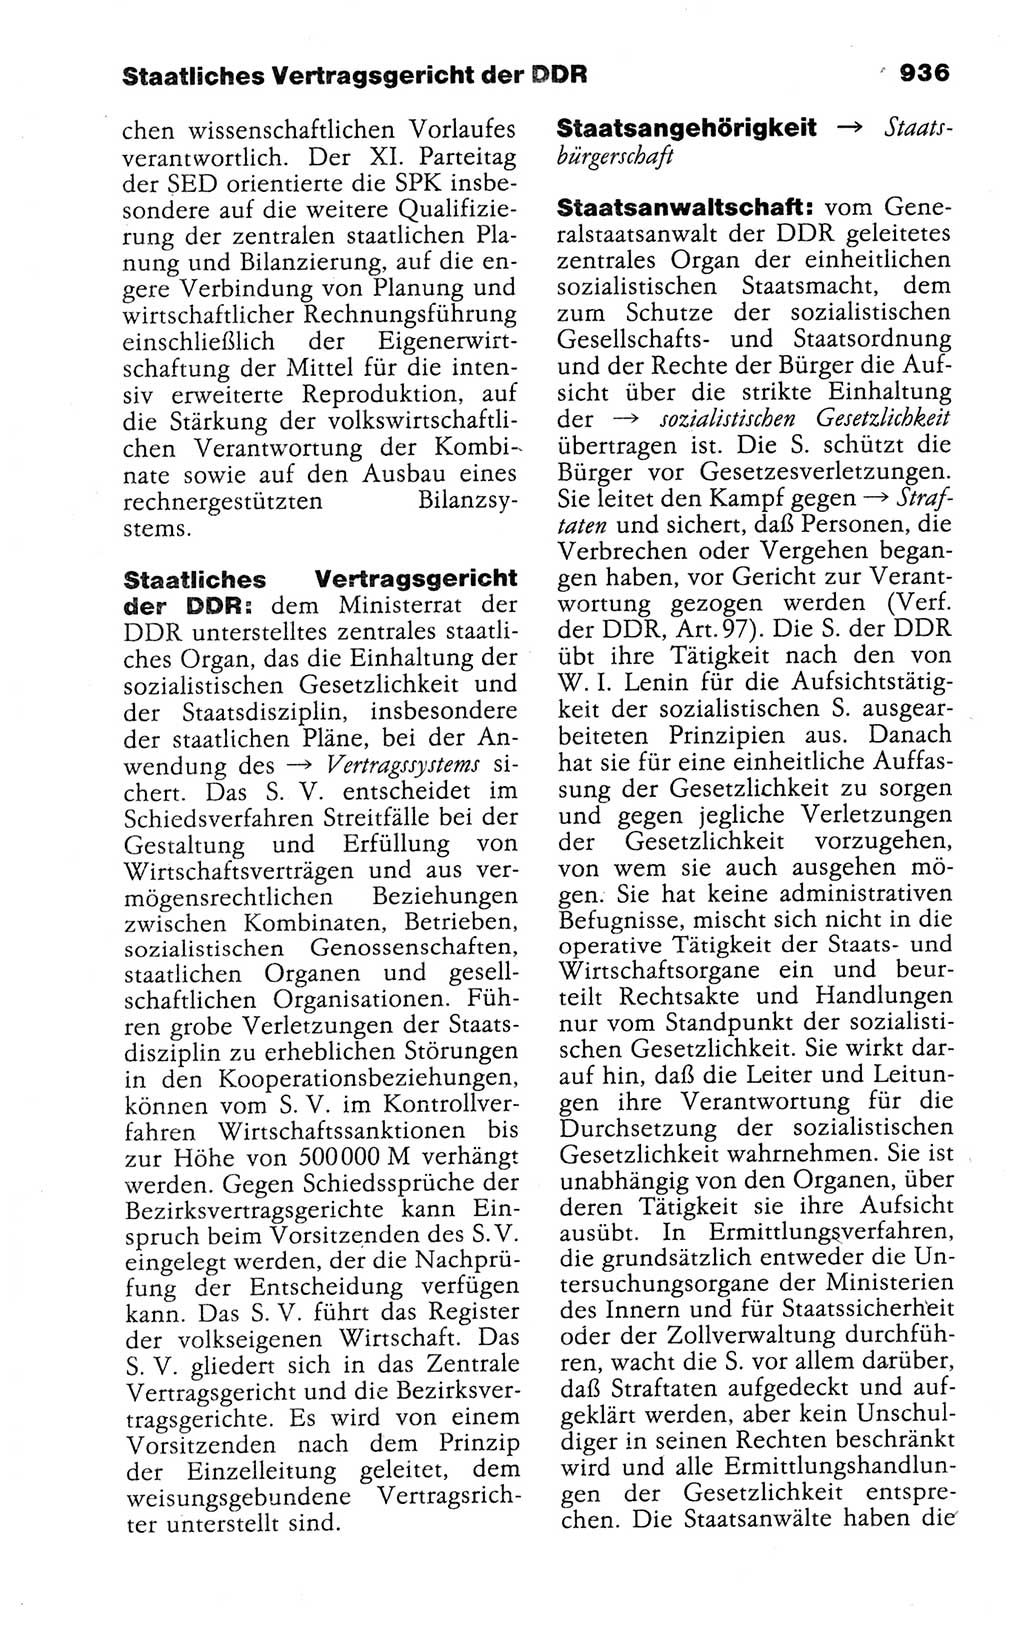 Kleines politisches Wörterbuch [Deutsche Demokratische Republik (DDR)] 1988, Seite 936 (Kl. pol. Wb. DDR 1988, S. 936)